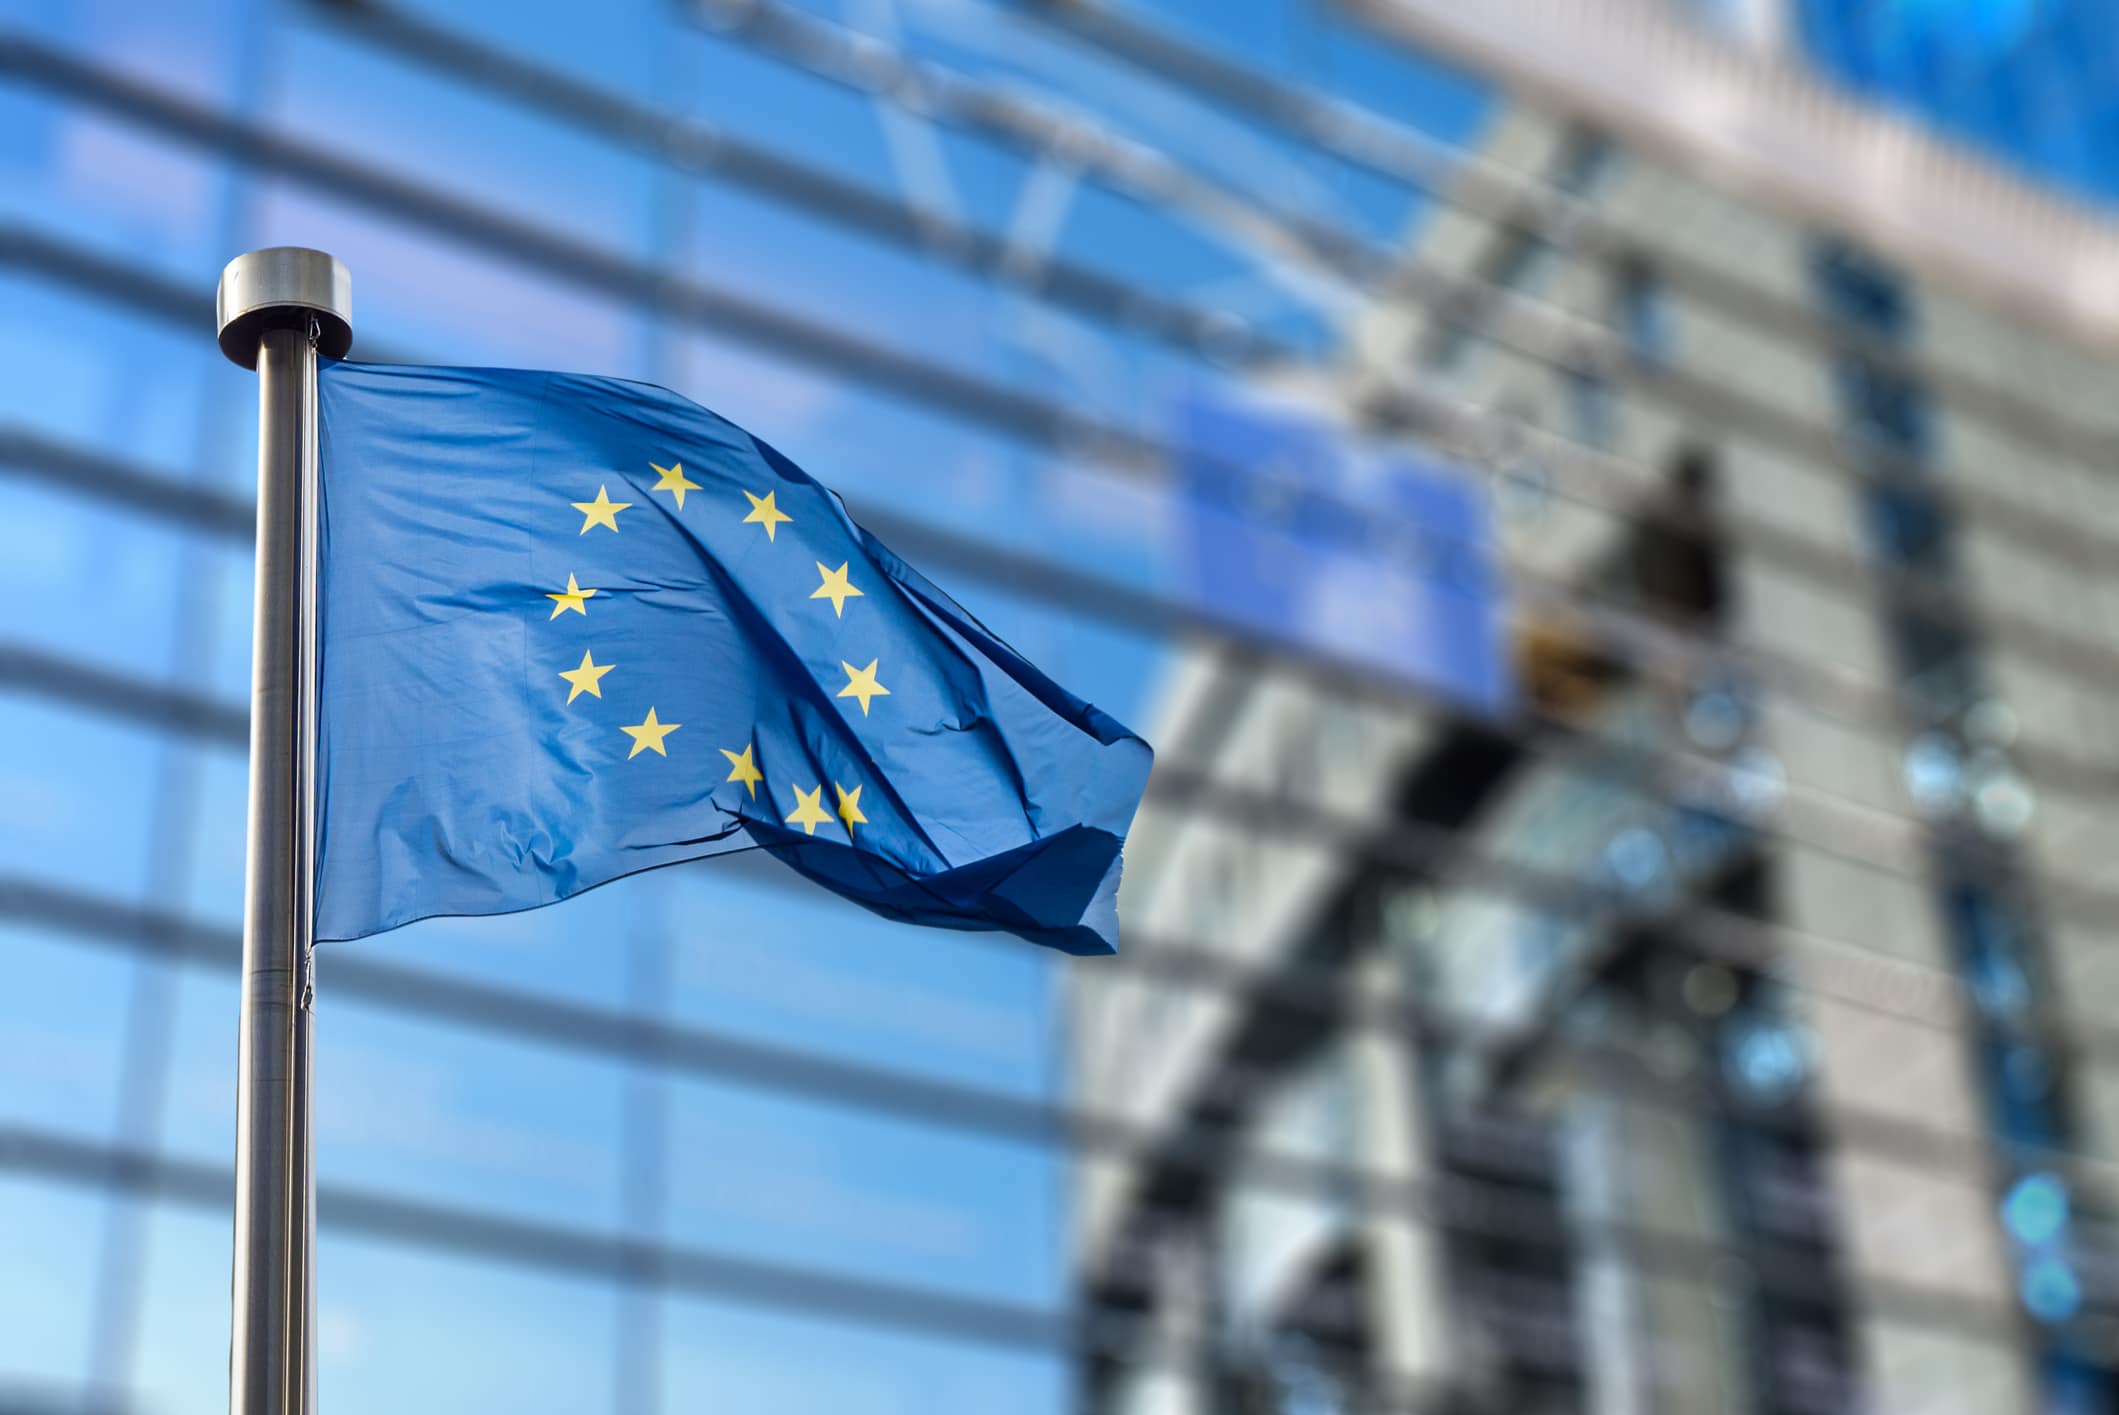 EU-flagget foran Europaparlamentet i Brussel, Belgia